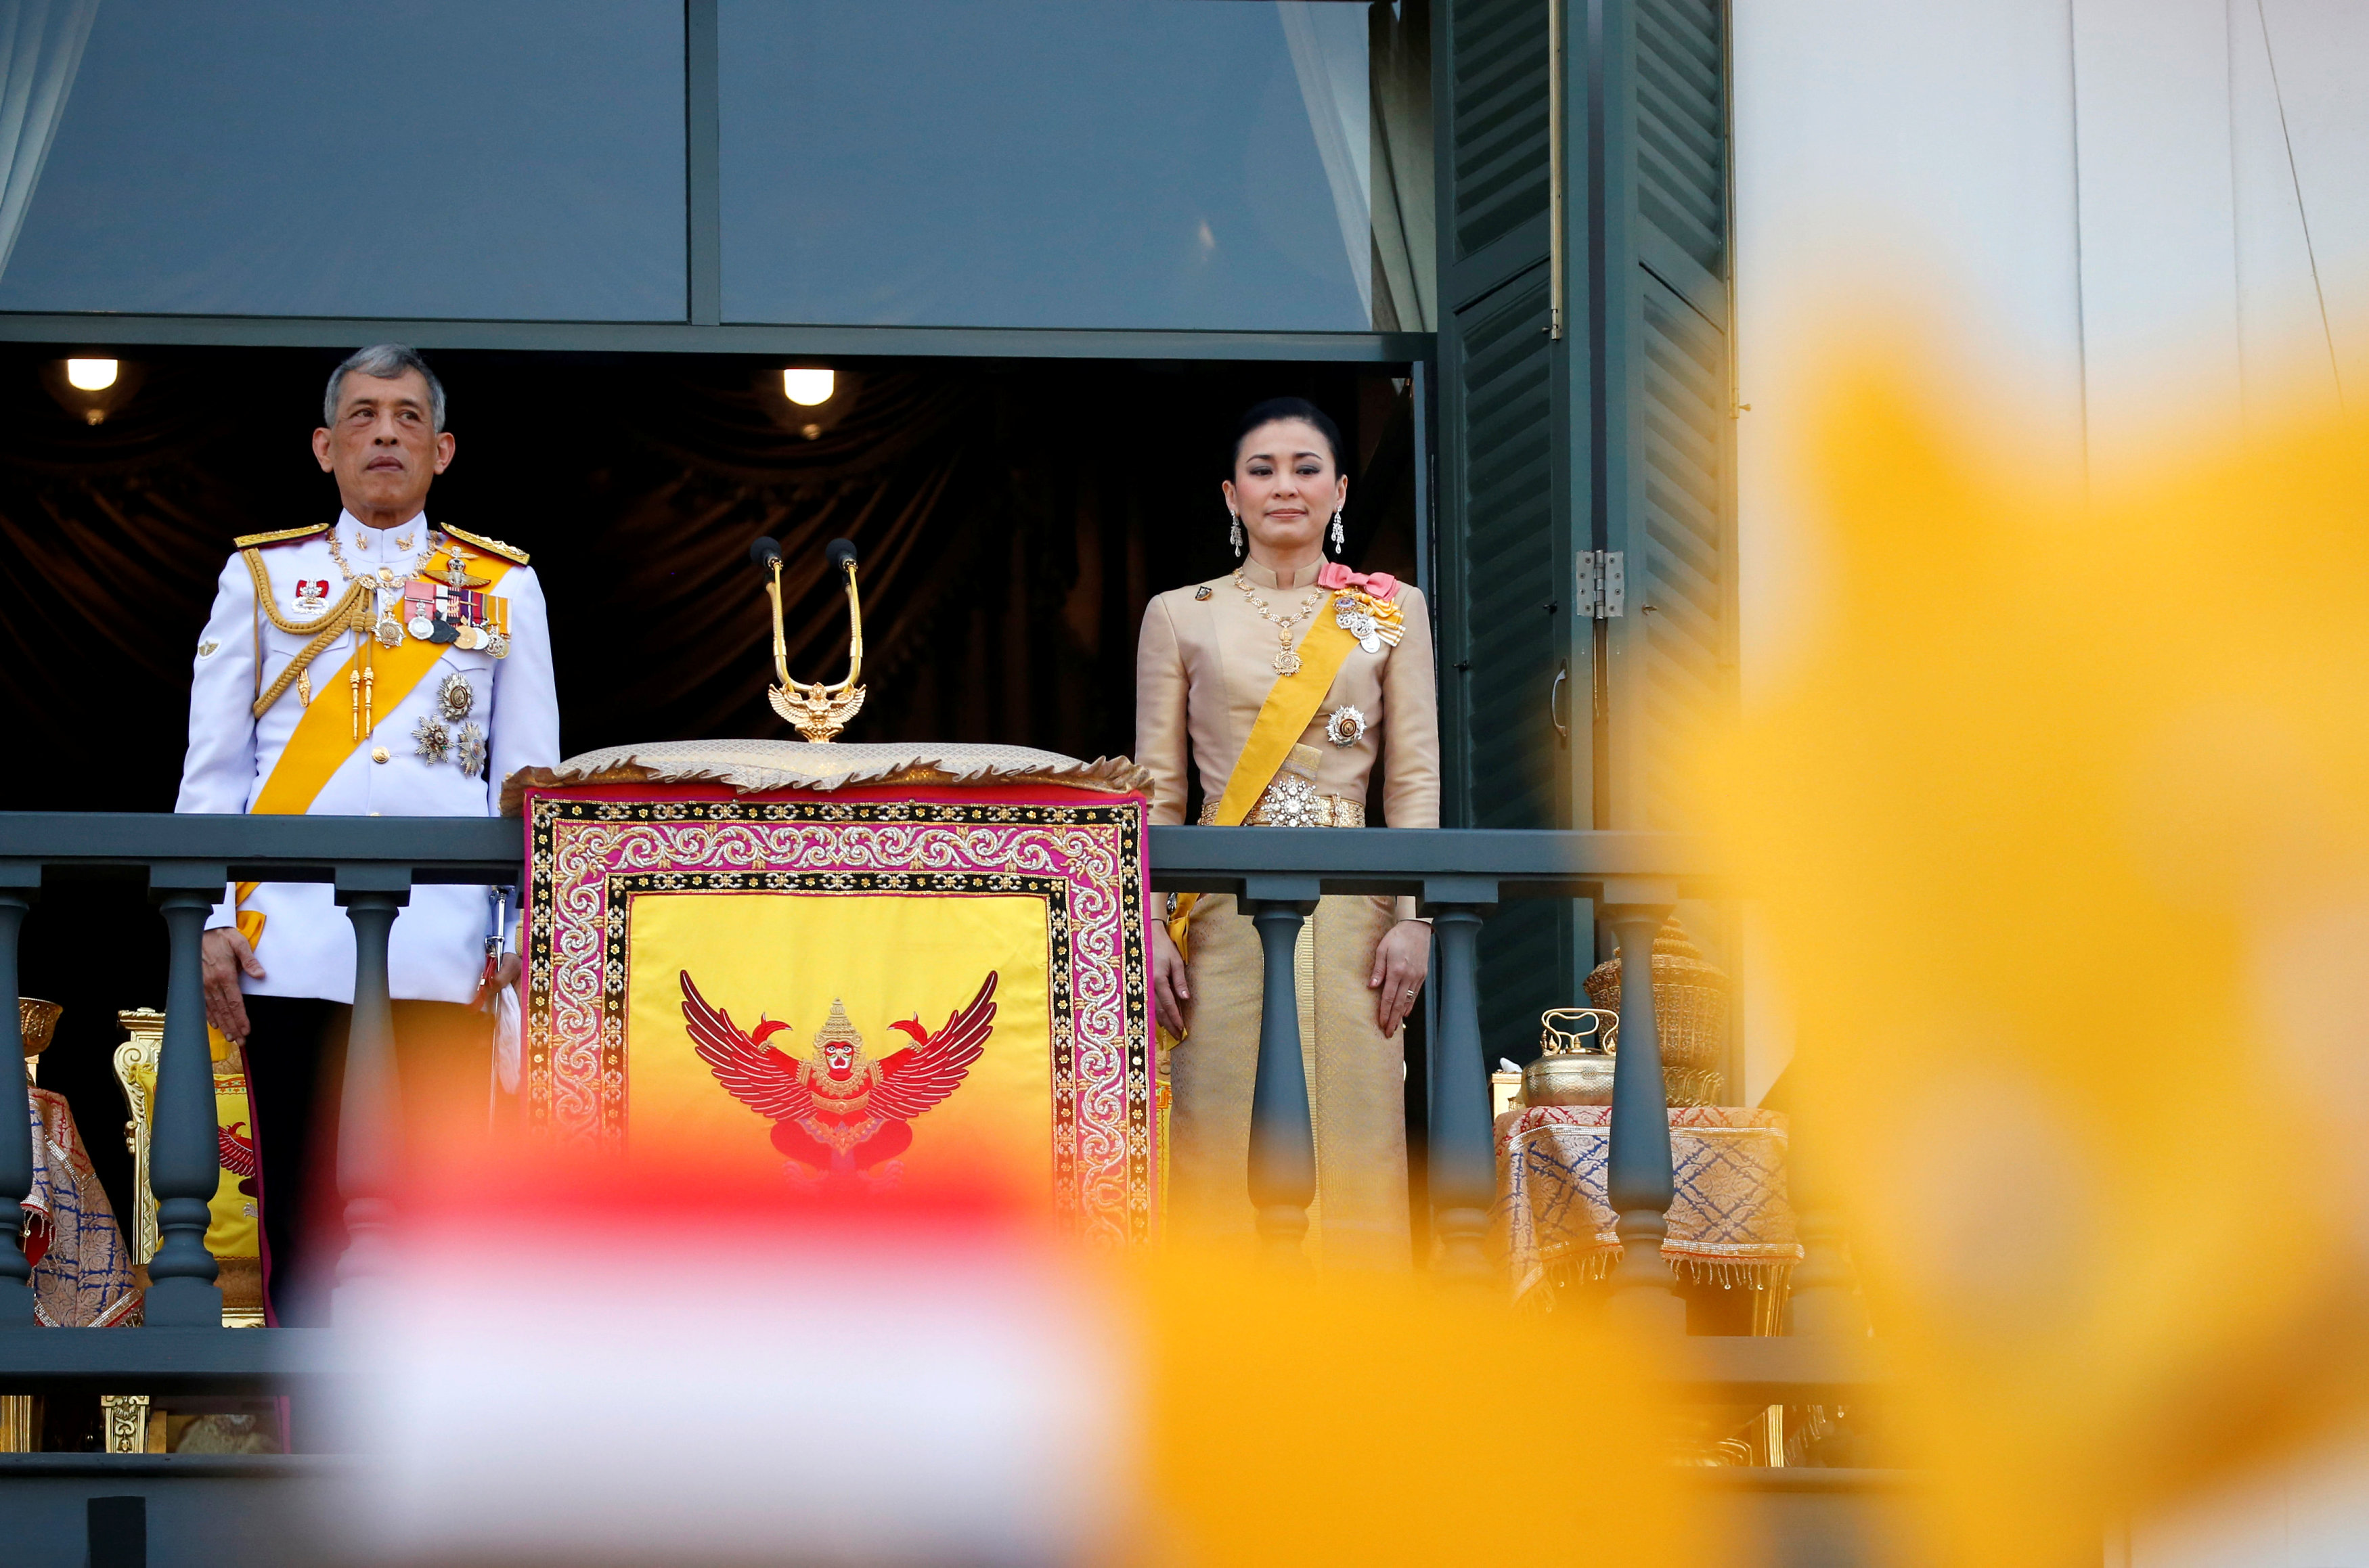 Los reyes tailandeses participan en primera audiencia pública tras coronación (Fotos)